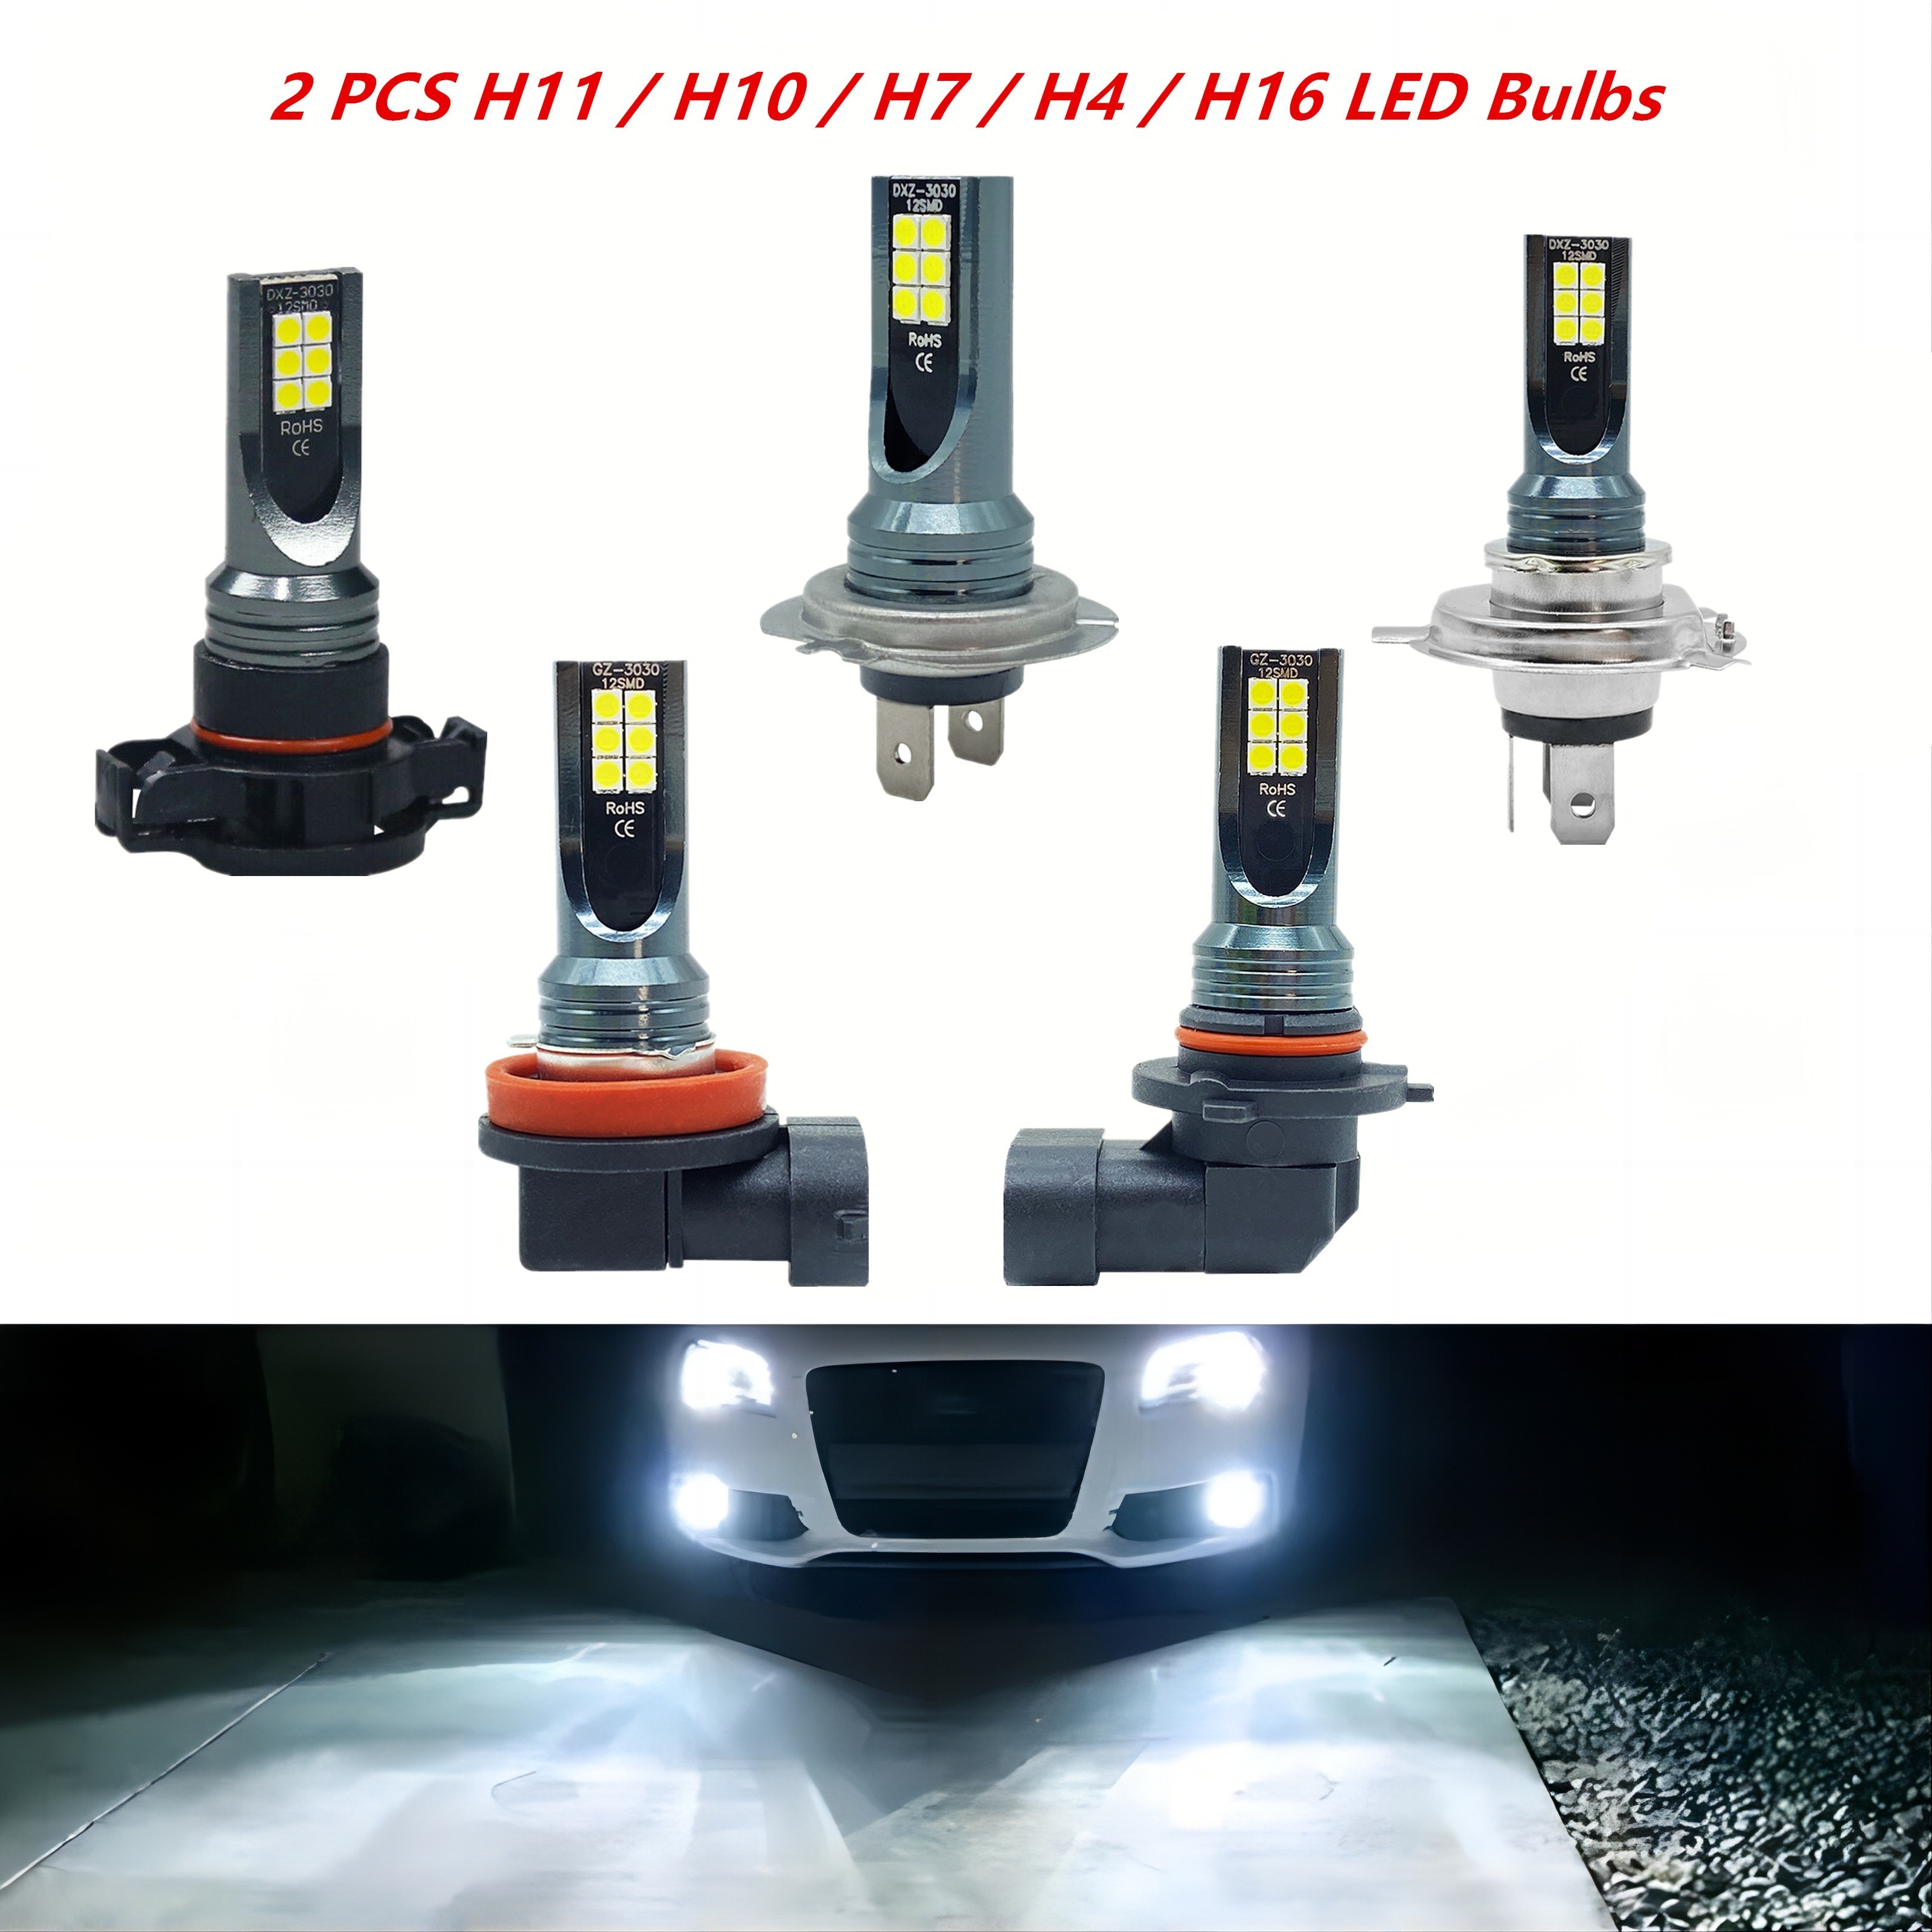 Bombilla LED para coche 110W Luz antiniebla LED H11 H4 H7 9005